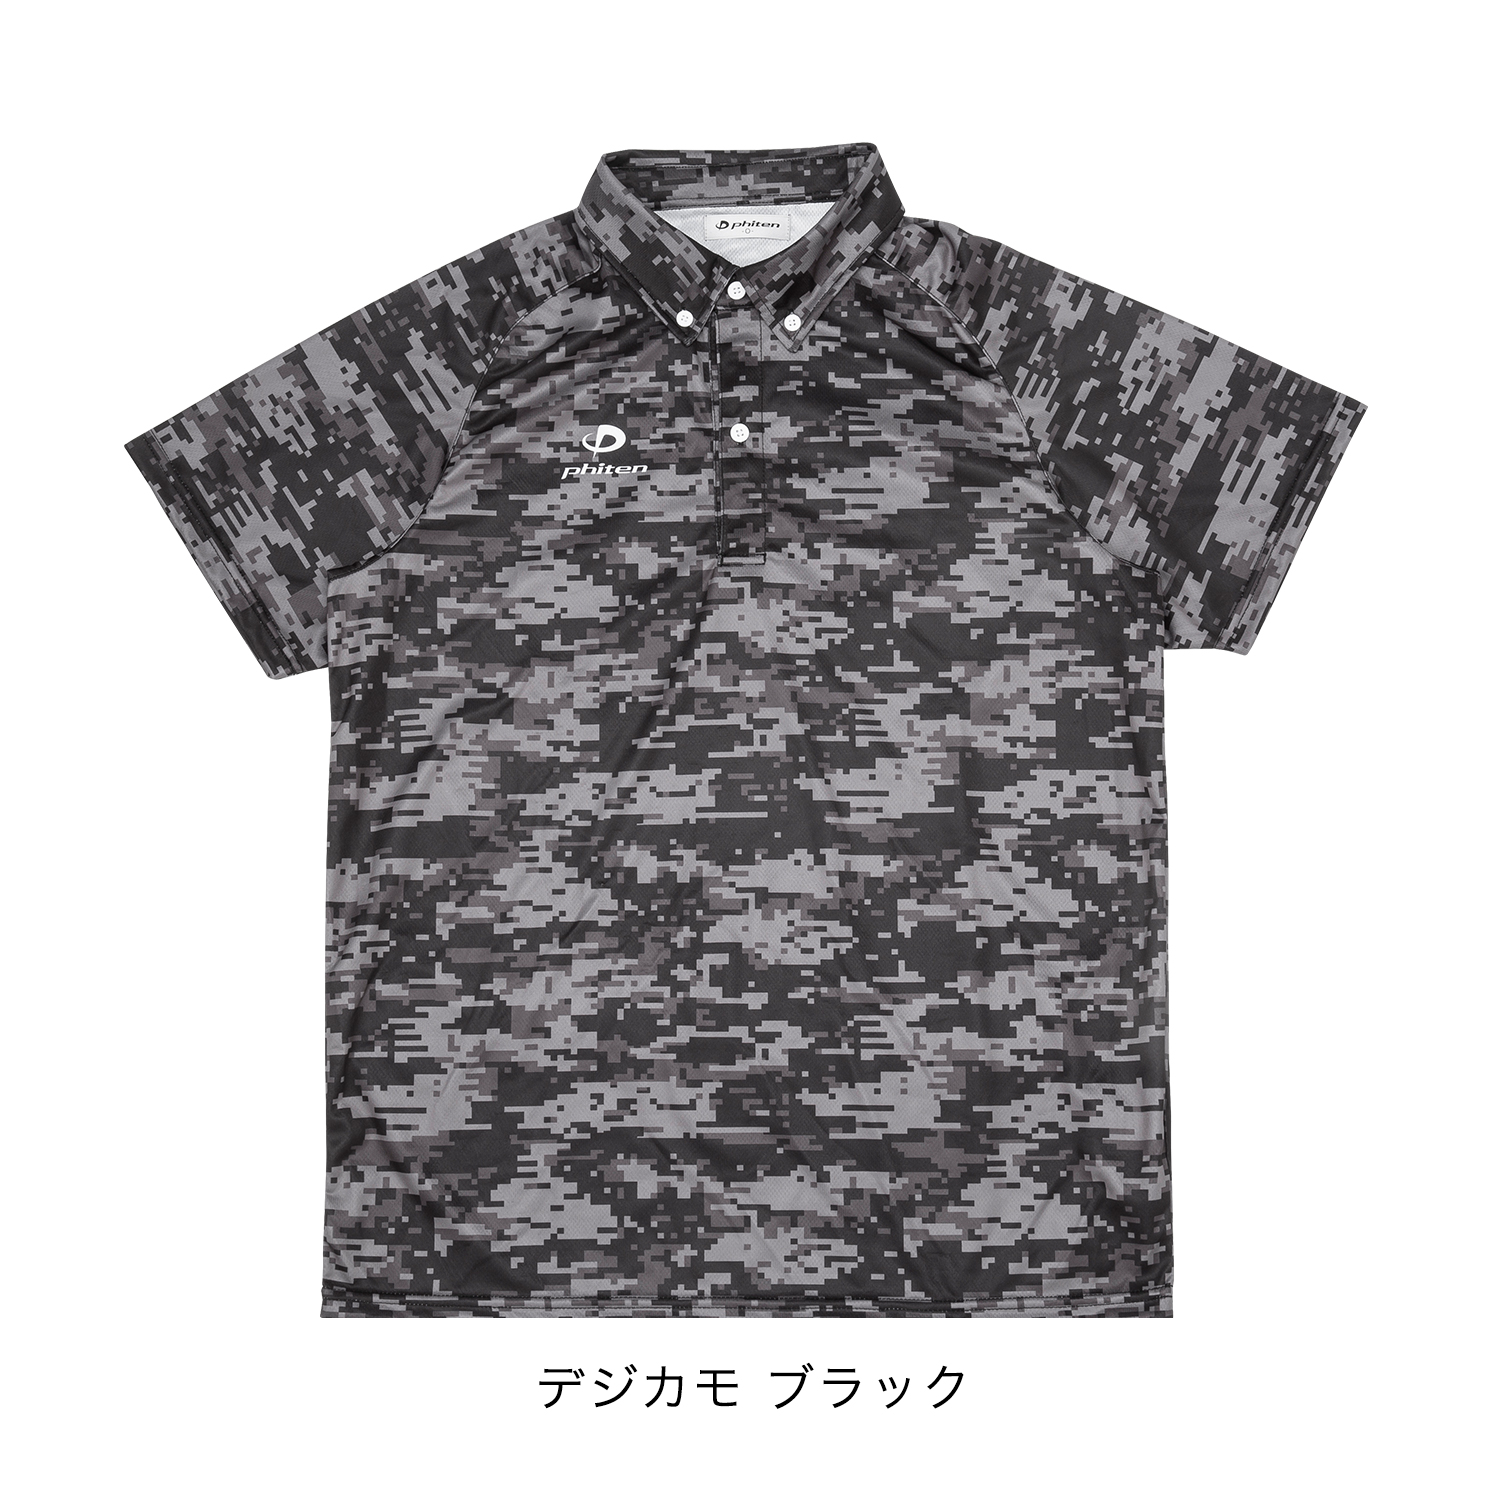 ポロシャツ(ライト)デジカモ | ファイテン公式通販サイト【ファイテン